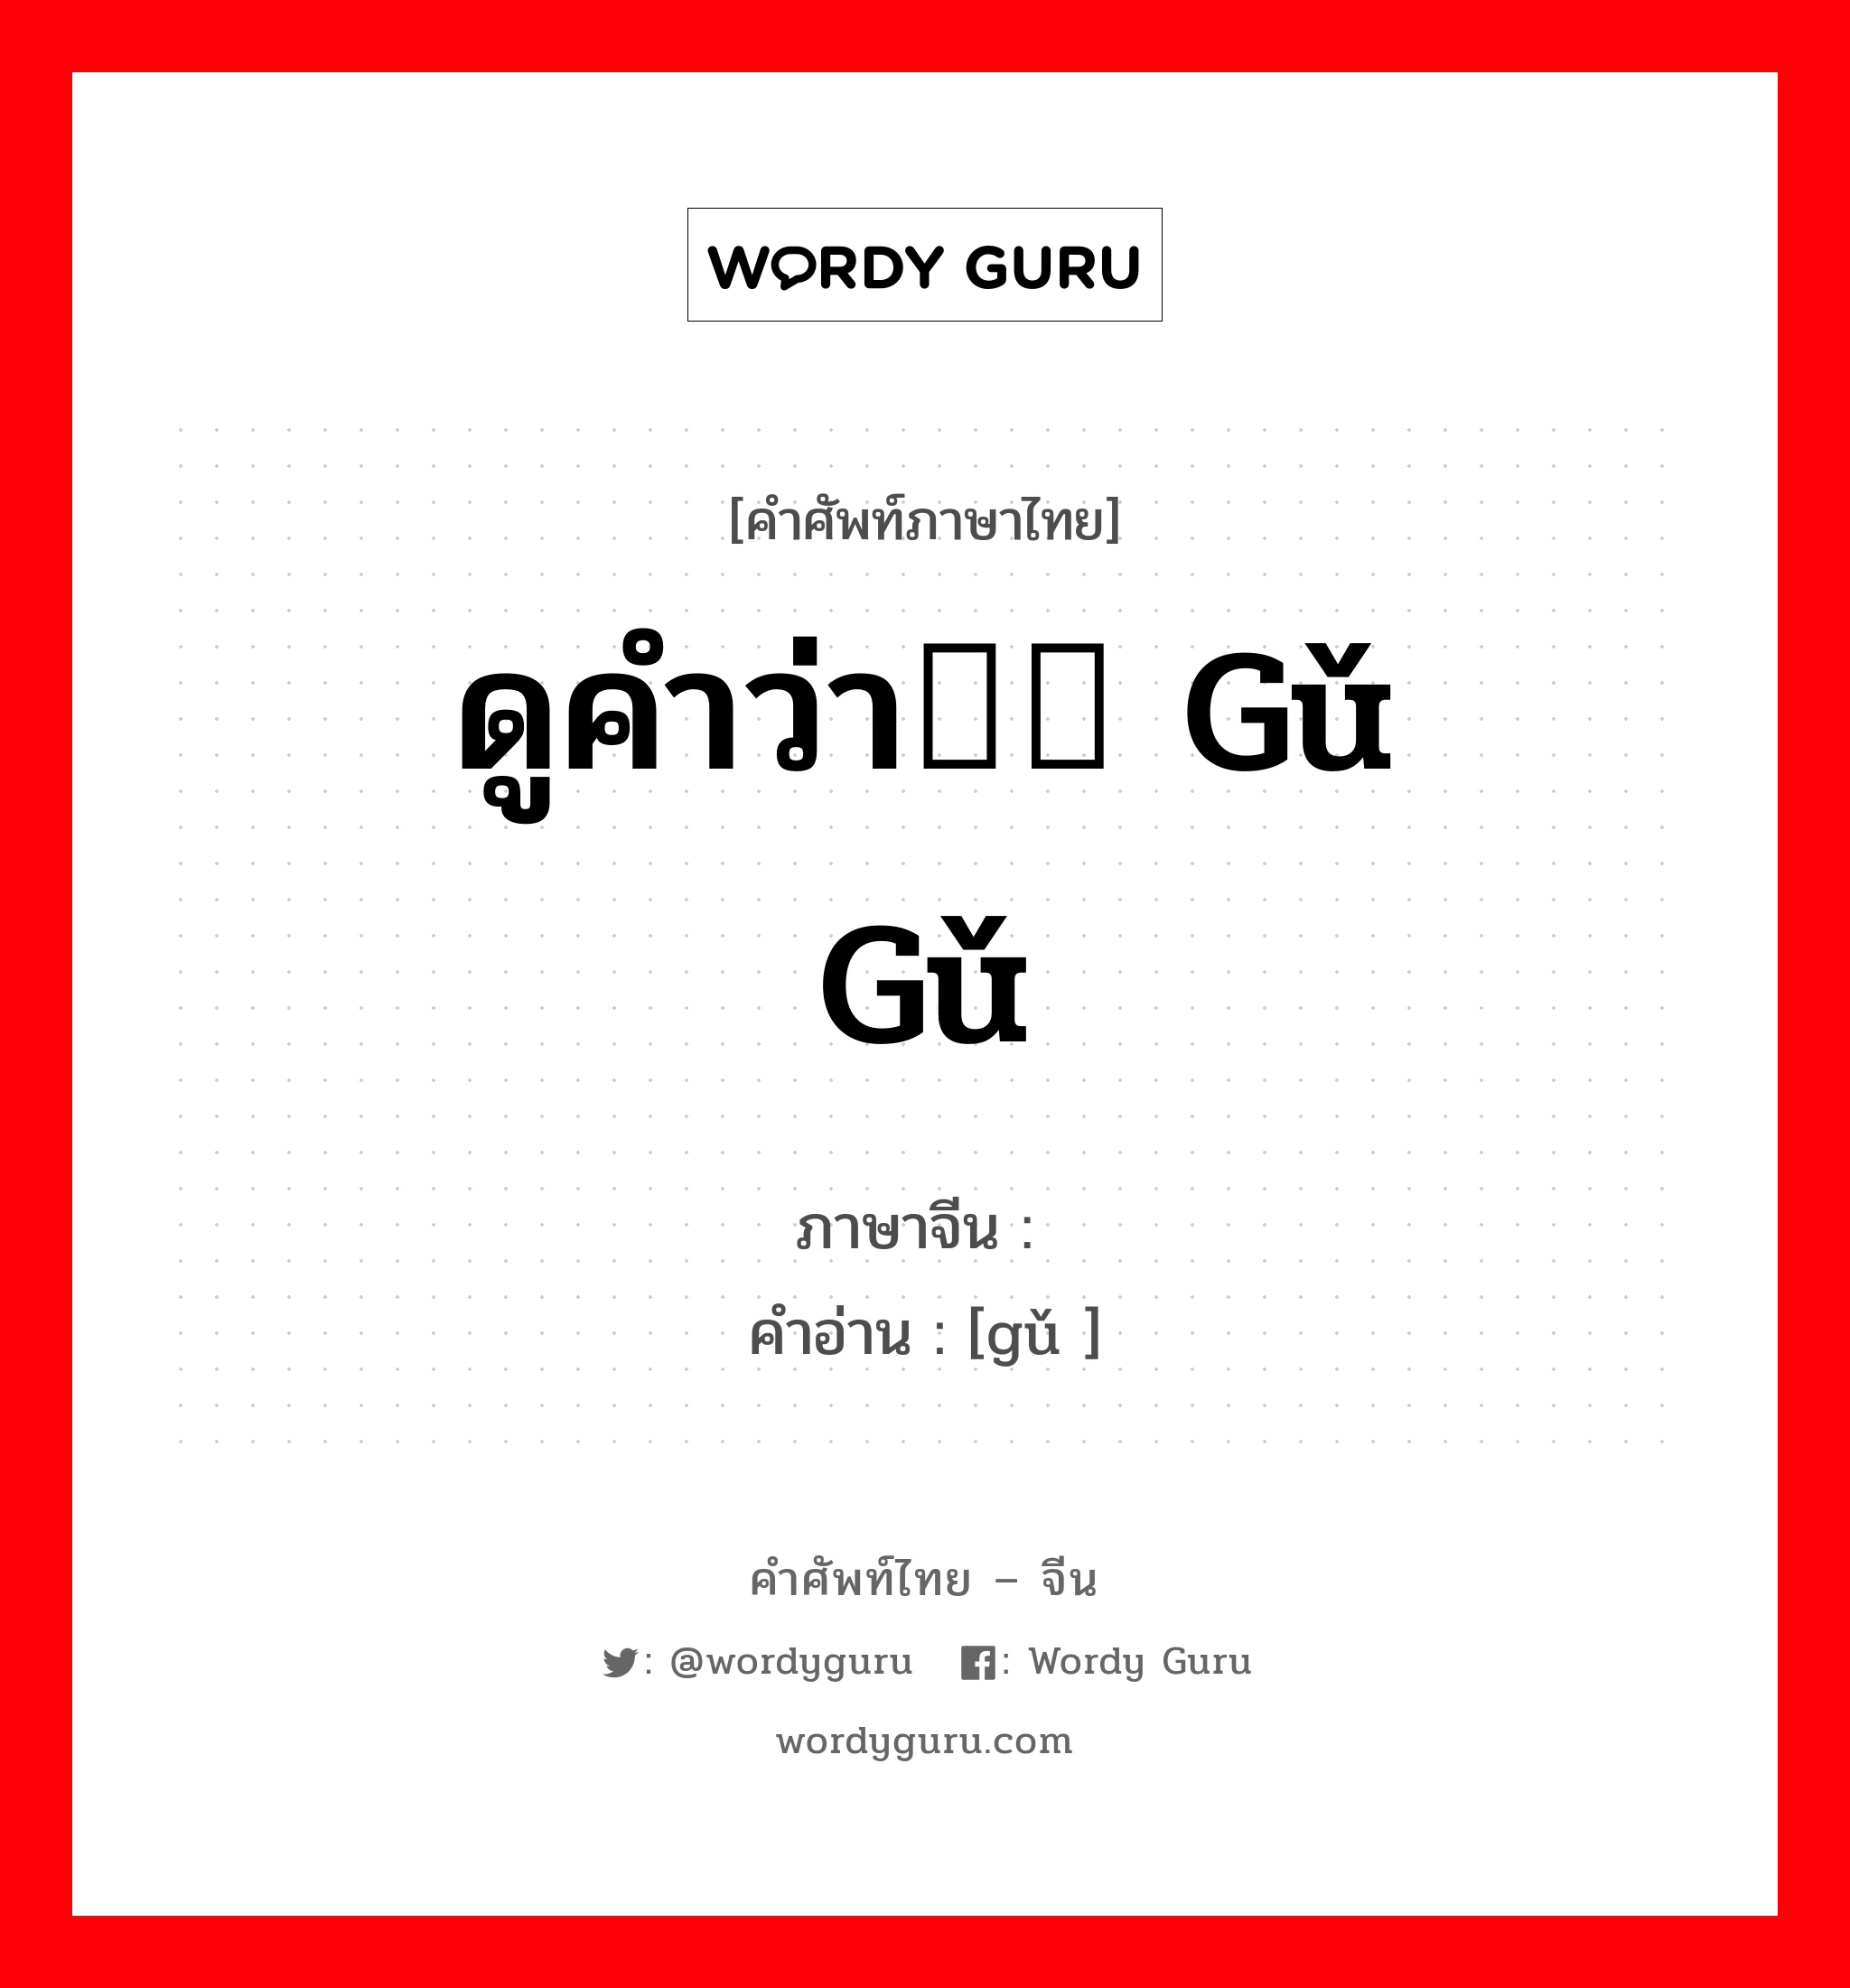 ดูคำว่า汩汩 gǔ gǔ ภาษาจีนคืออะไร, คำศัพท์ภาษาไทย - จีน ดูคำว่า汩汩 gǔ gǔ ภาษาจีน 汩 คำอ่าน [gǔ ]